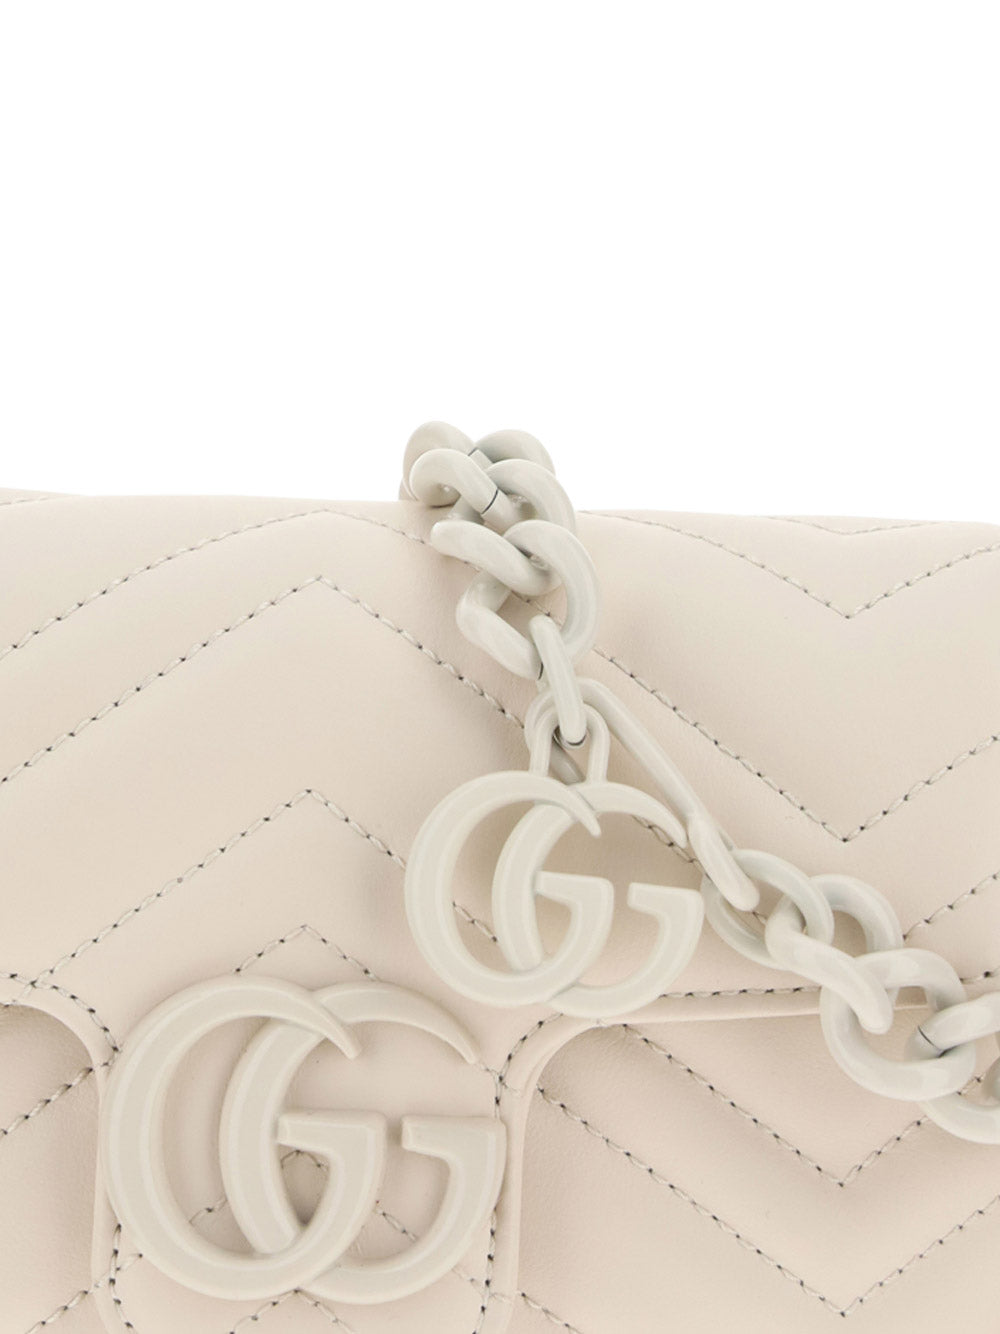 GG Marmont Belt Bag - White